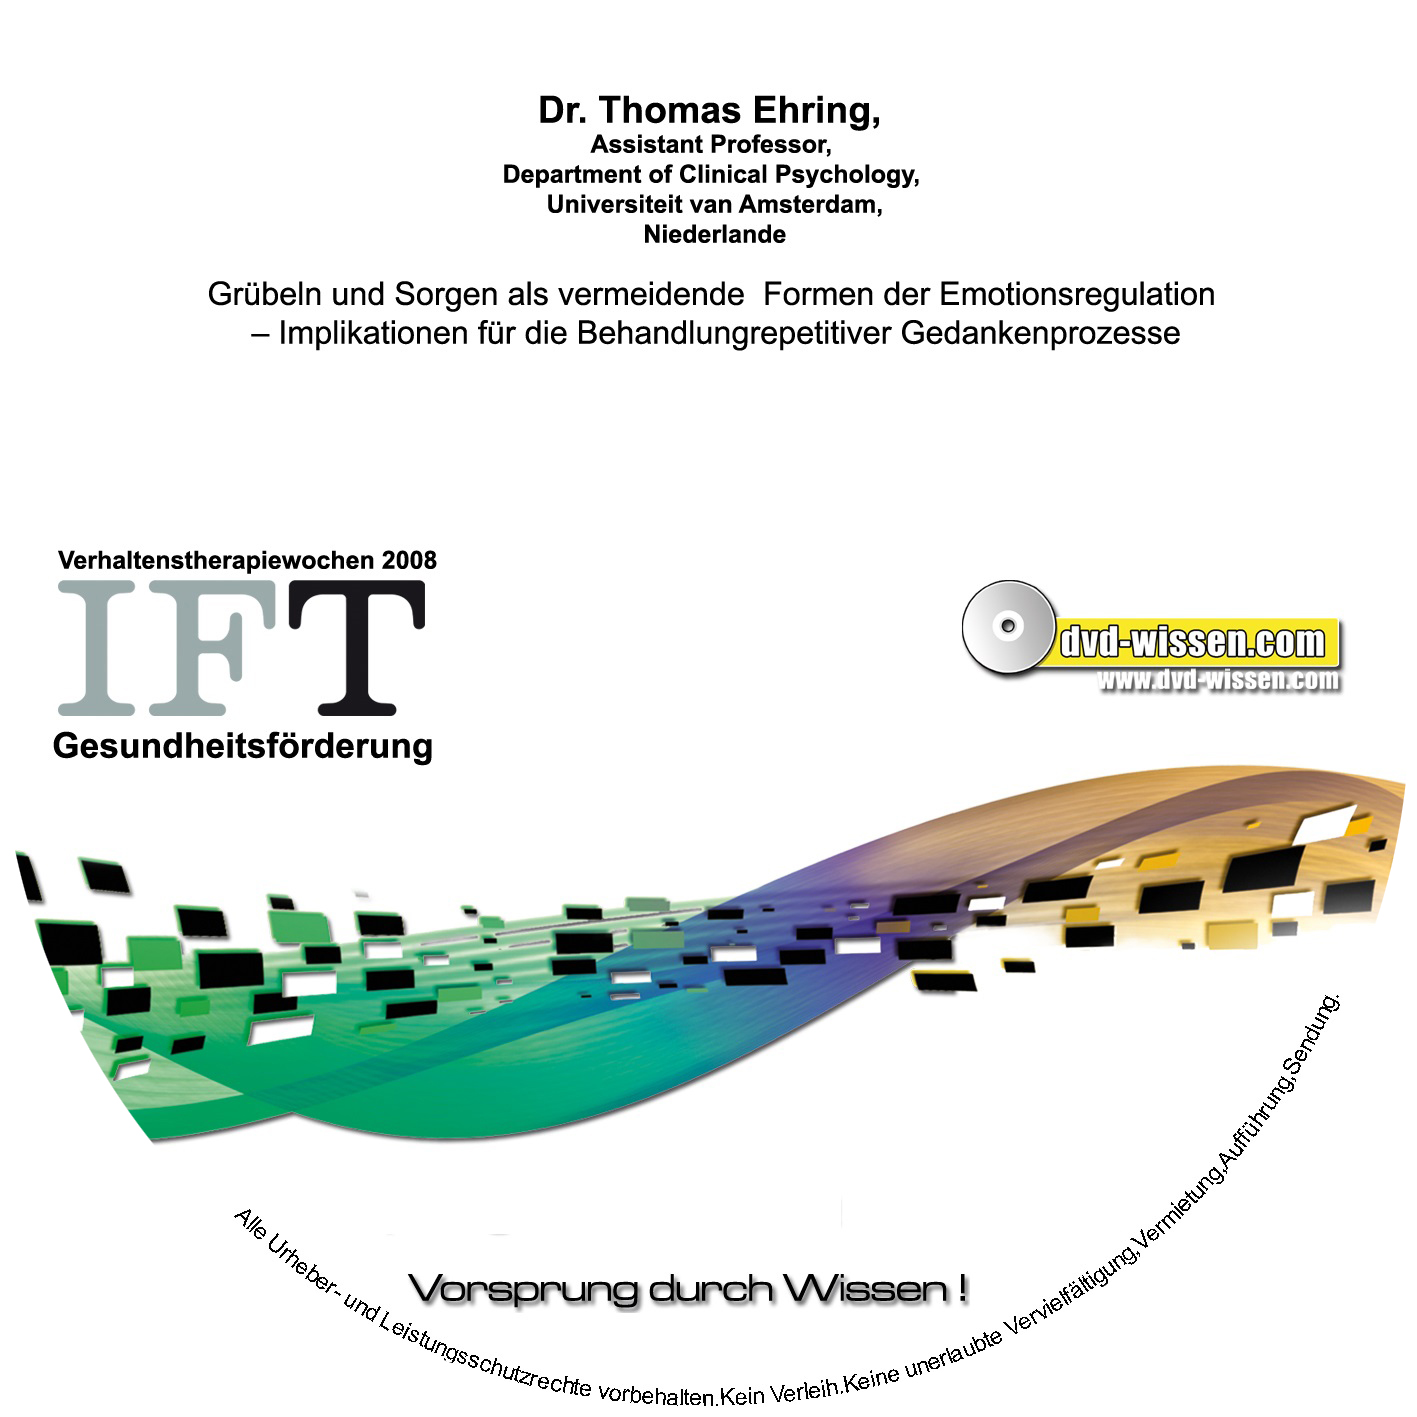 Dr. Thomas Ehring: Grübeln und Sorgen als vermeidende Formen der Emotionsregulation - Implikationen für die Behandlung repetitiver Gedankenprozesse